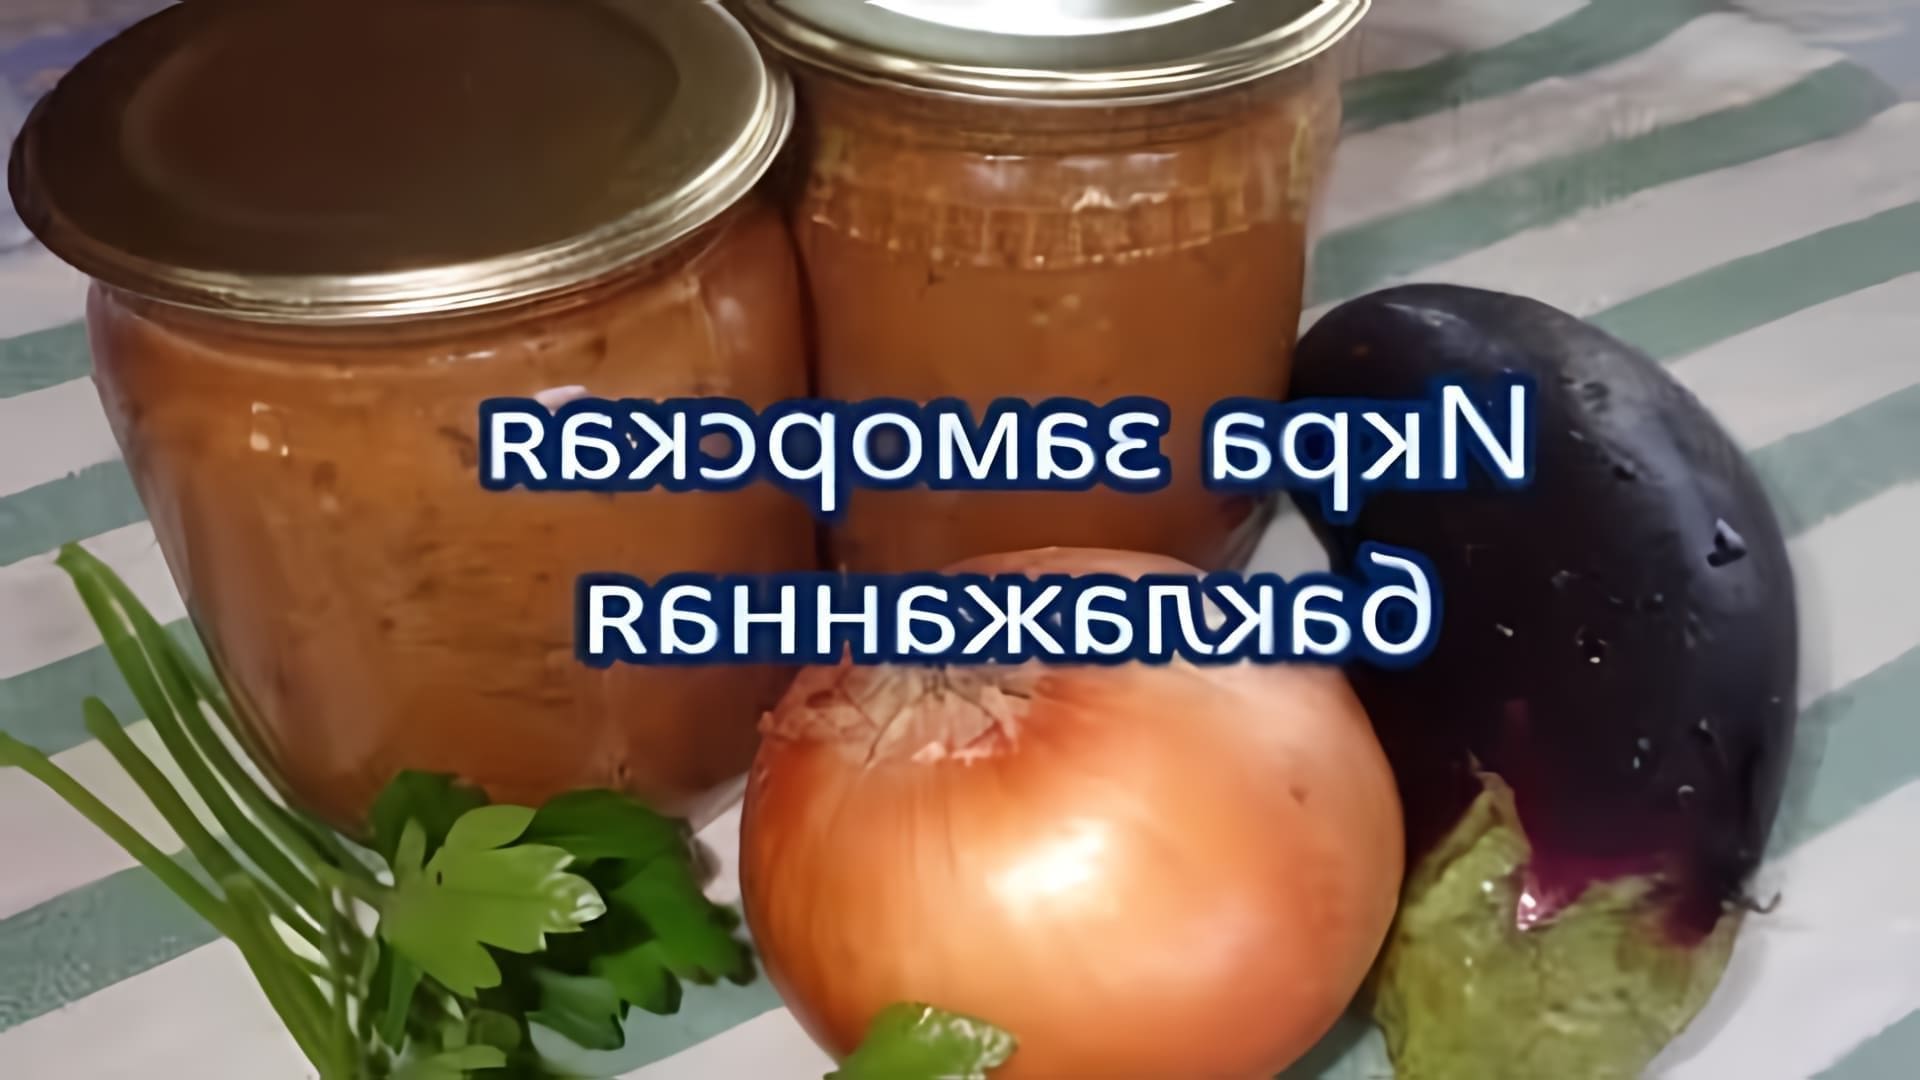 В этом видео демонстрируется рецепт приготовления икры заморской баклажанной на зиму